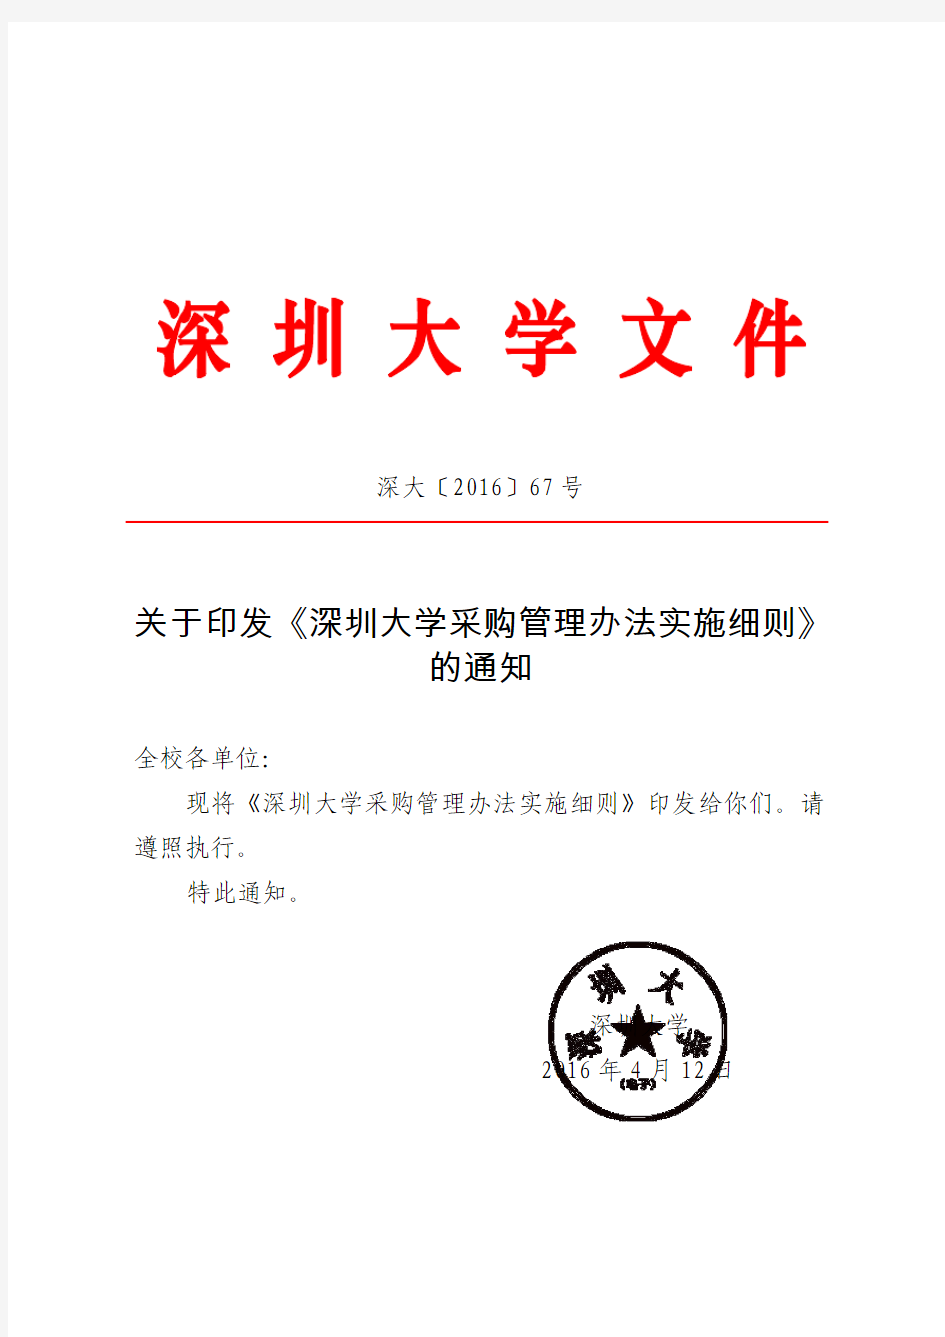 深大[2016]67号：关于印发《深圳大学采购管理办法实施细则》的通知